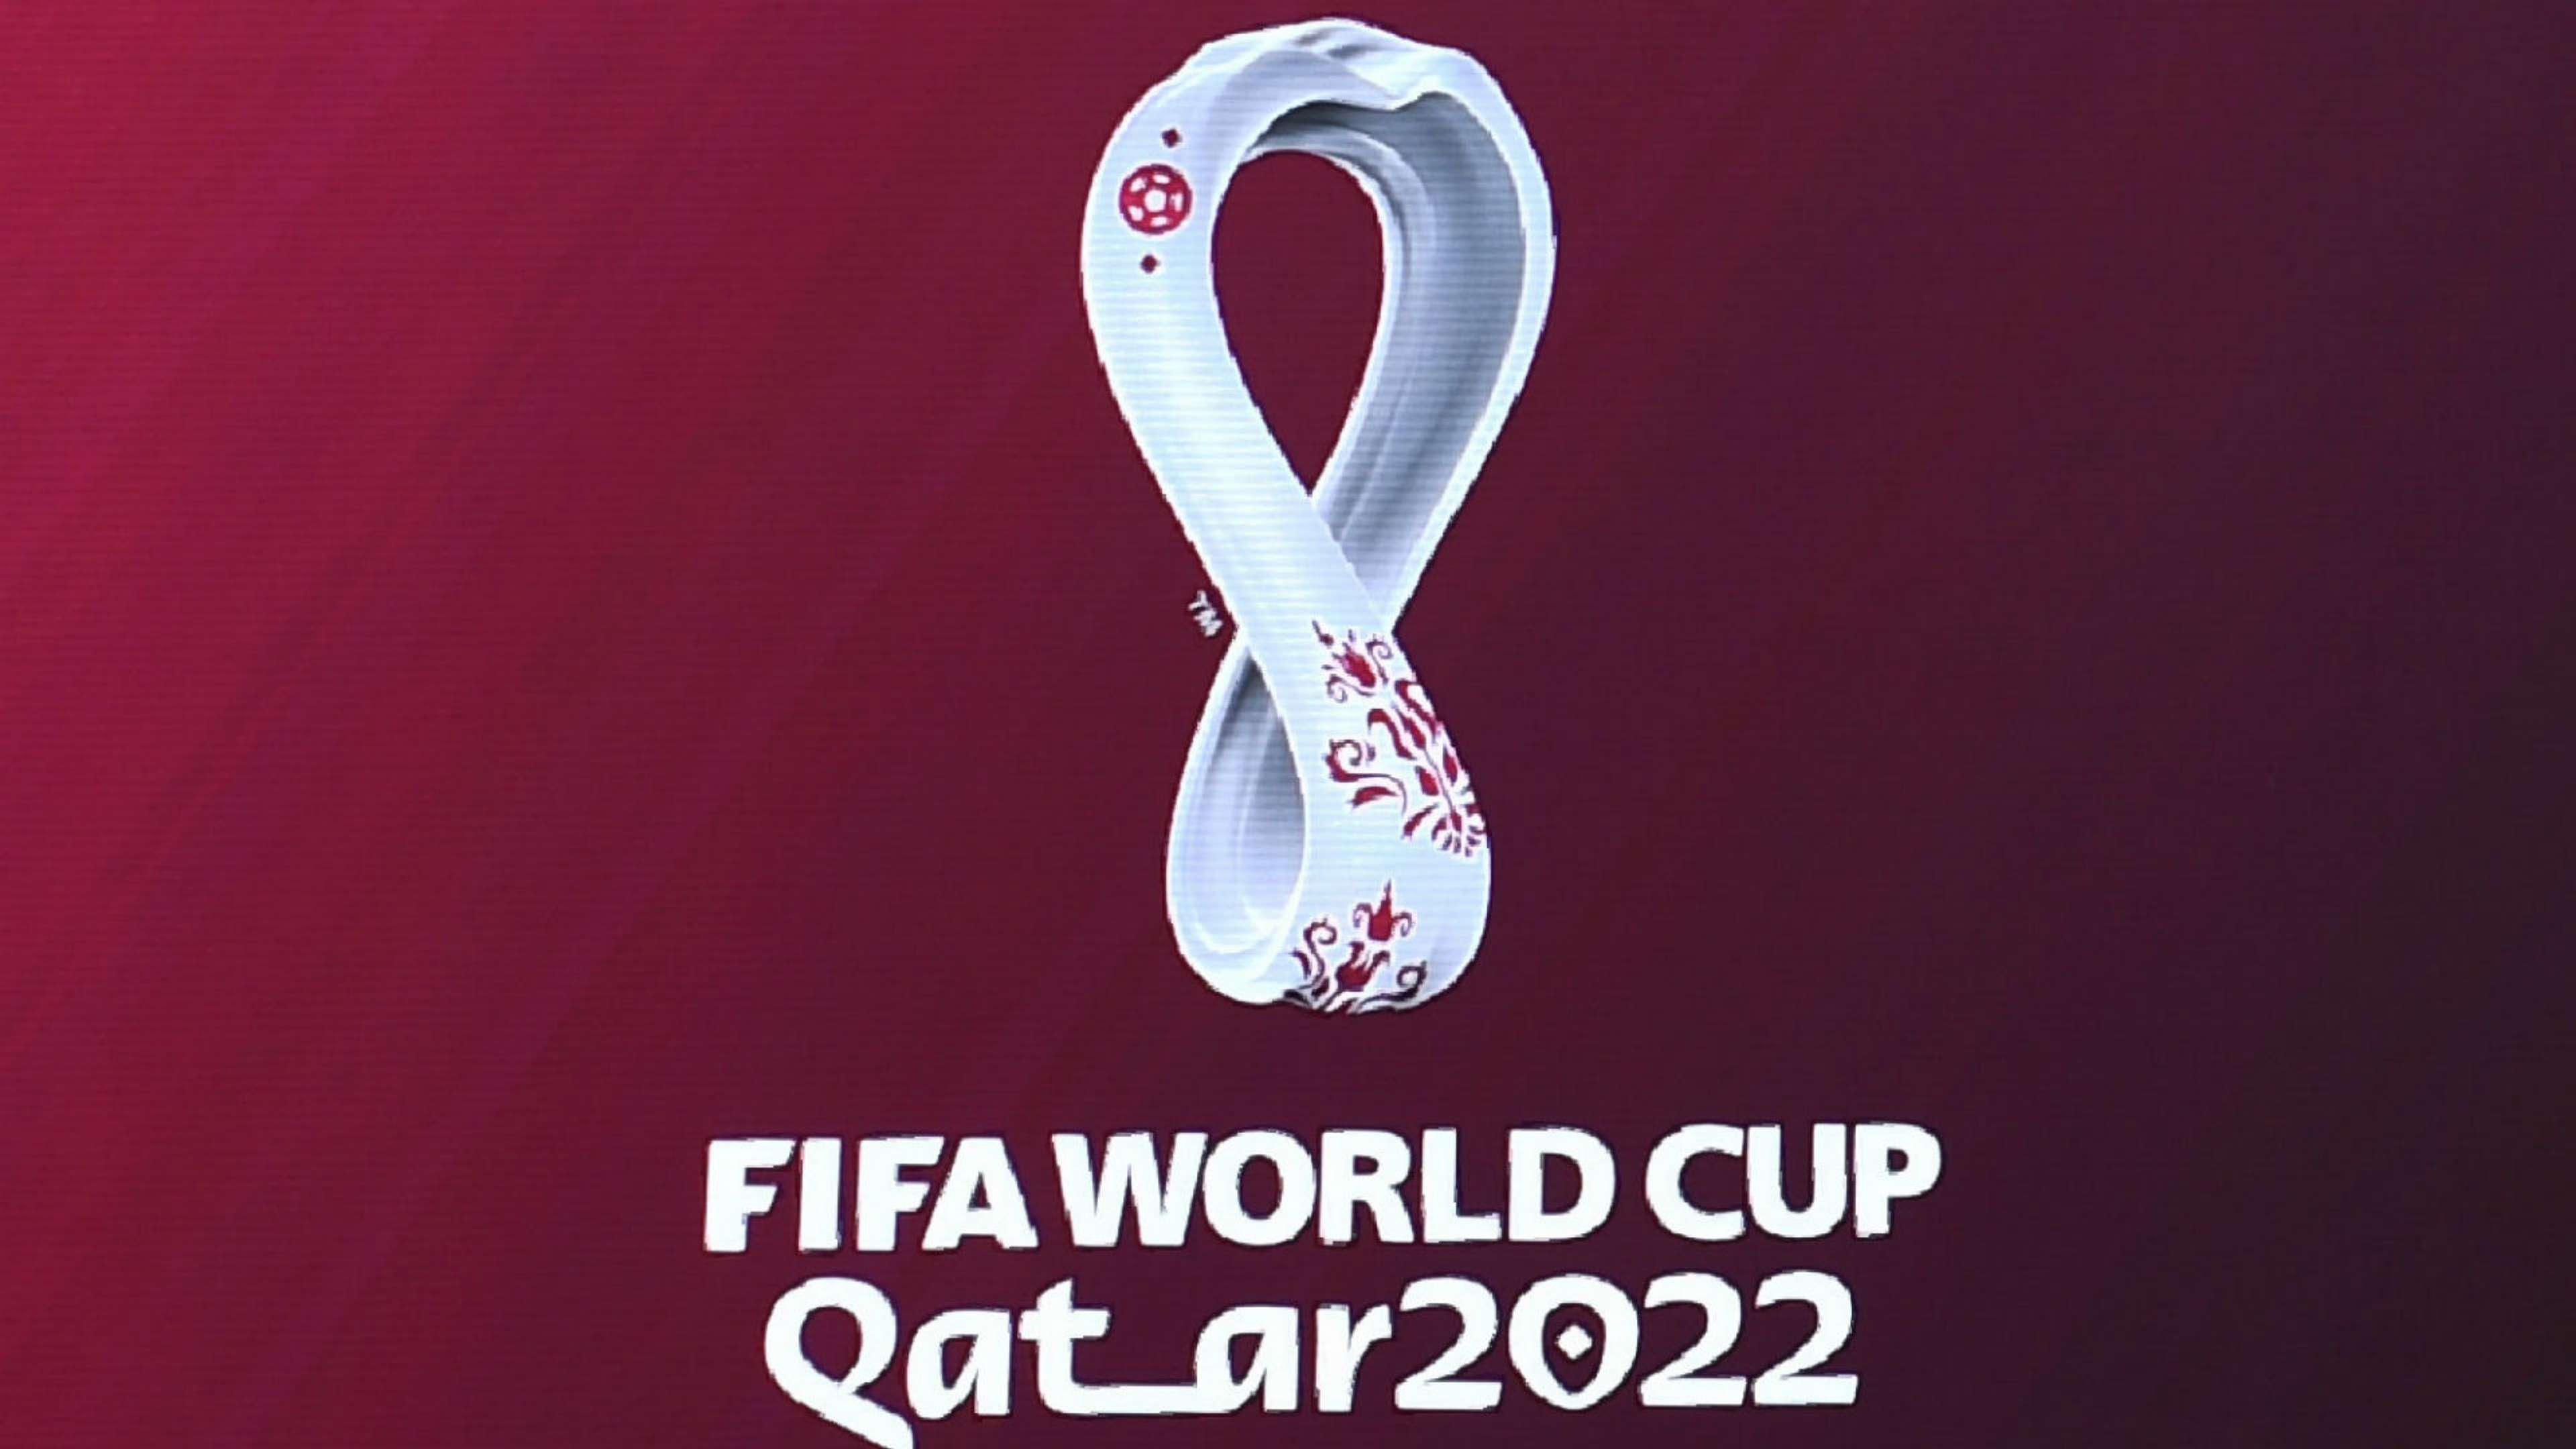 qatar 2022.jpg